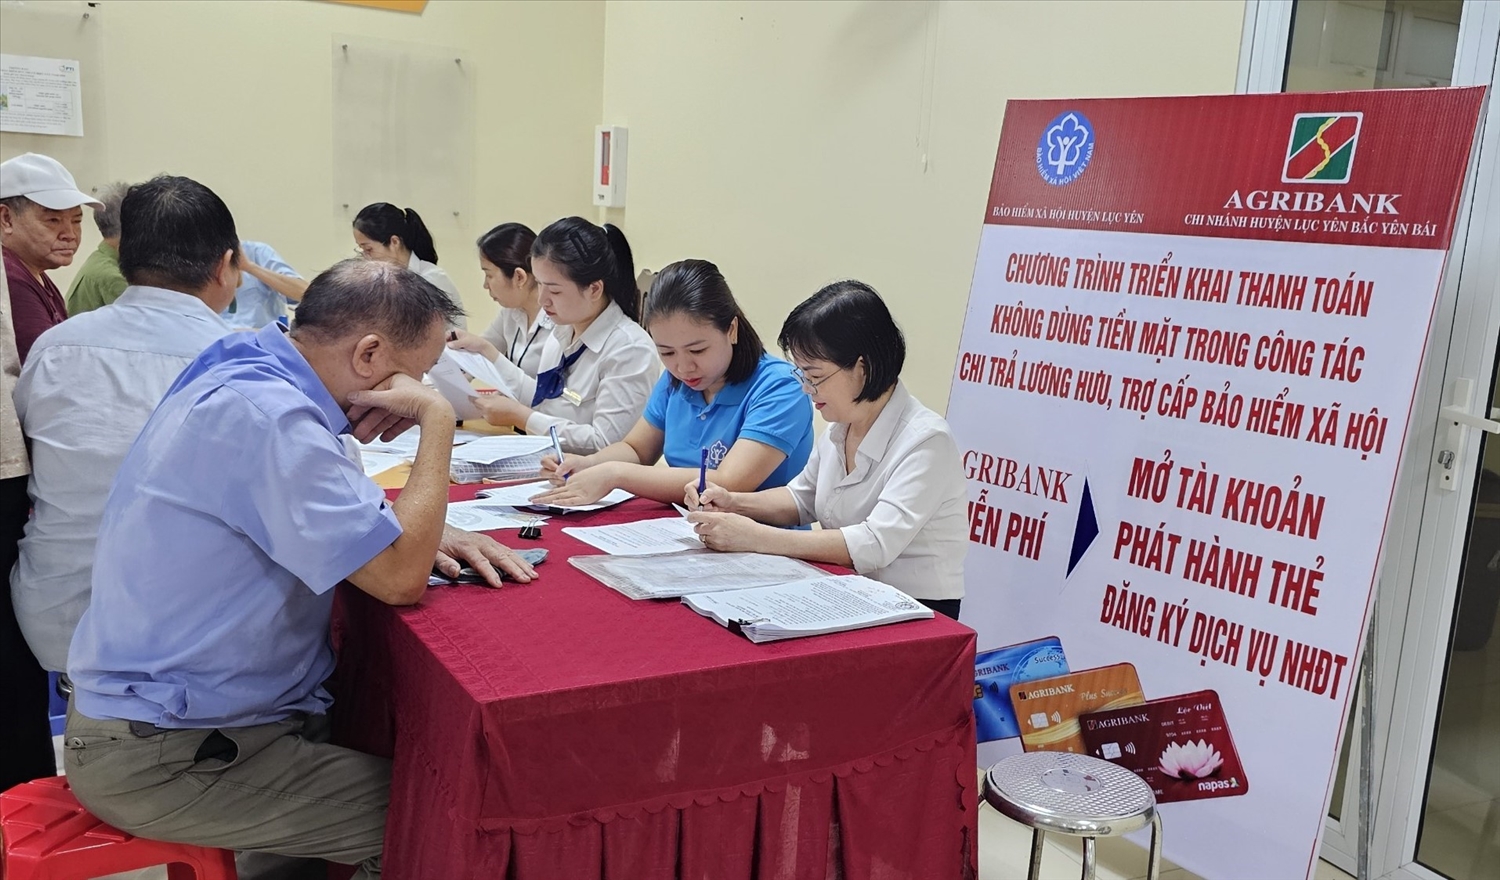 Bảo hiểm xã hội (BHXH) huyện Lục Yên, Yên Bái chi trả và vận động người dân nhận lương hưu, trợ cấp BHXH hàng tháng qua tài khoản cá nhân.